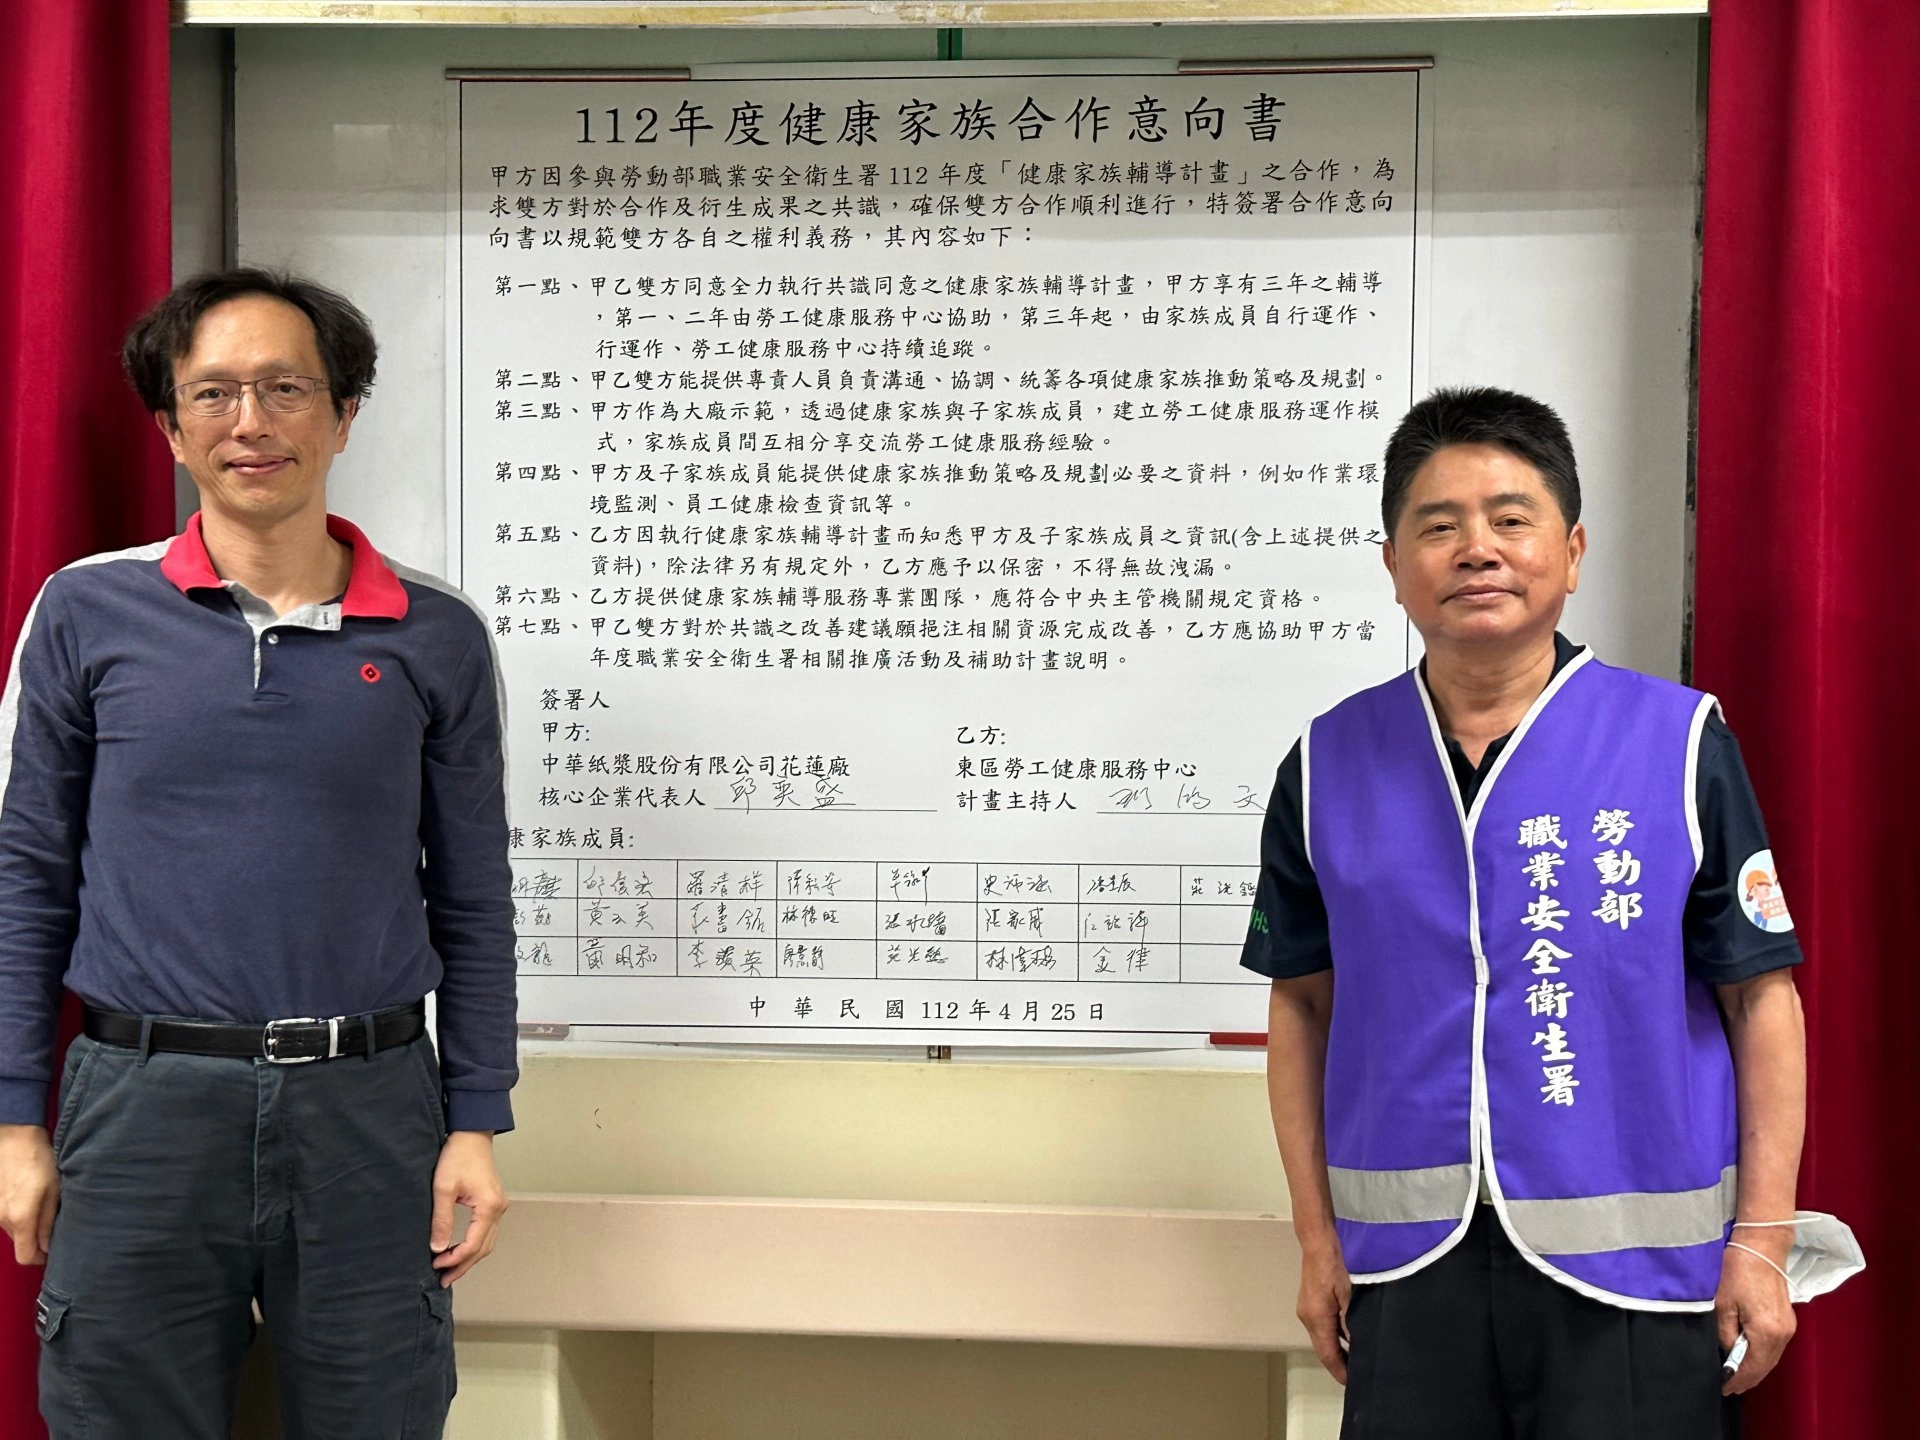 (左)廠長邱奕盛與(右)主持人劉鴻文共同簽屬健康家族成立意向書